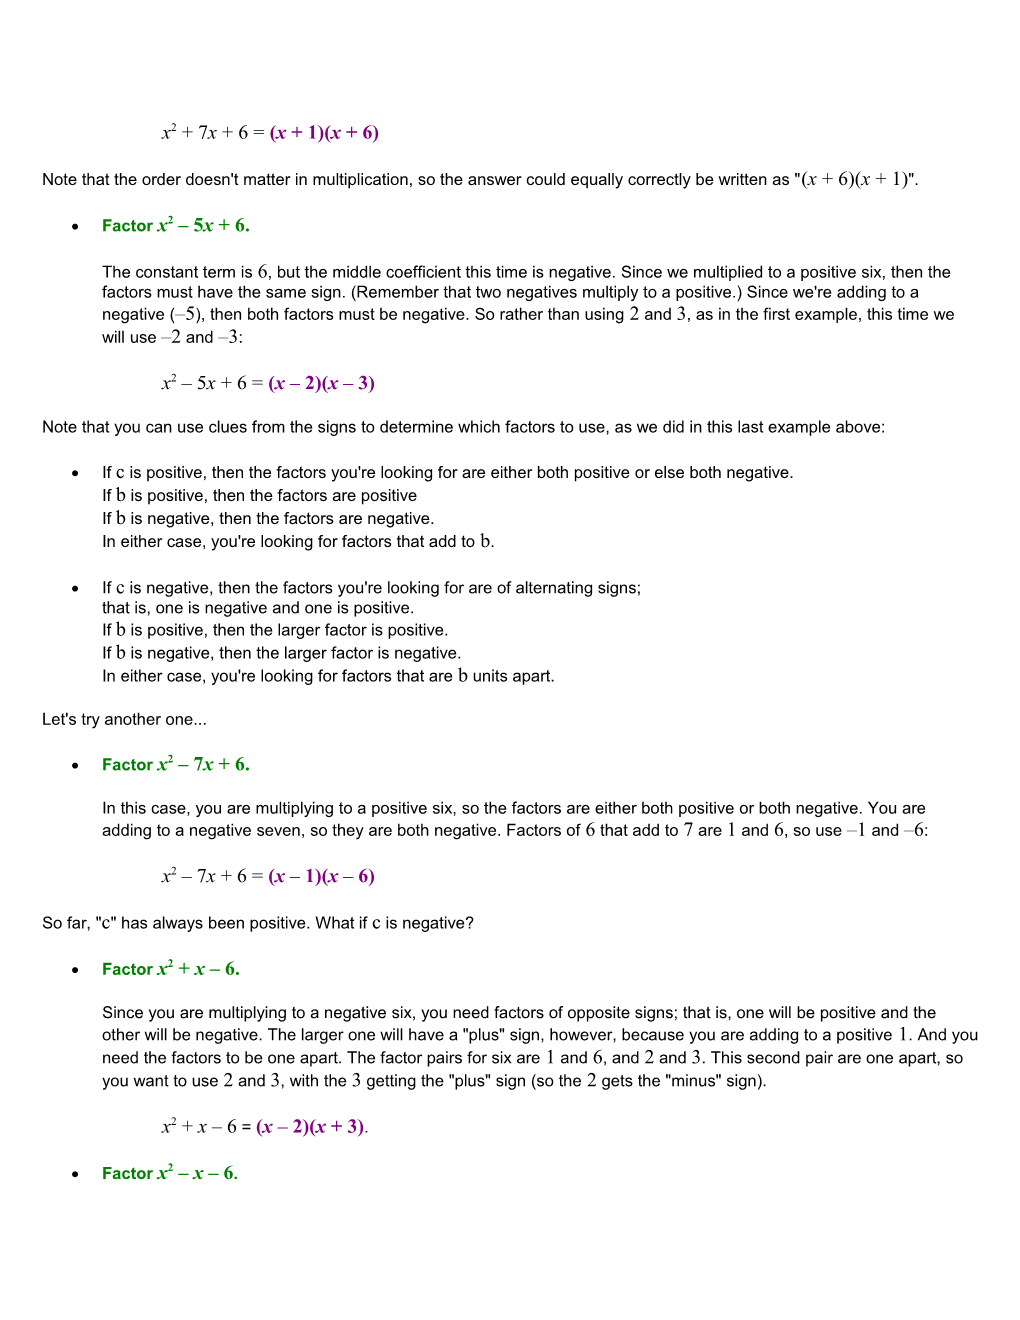 Factoring Quadratics: the Simple Case (Part 1 of 4)